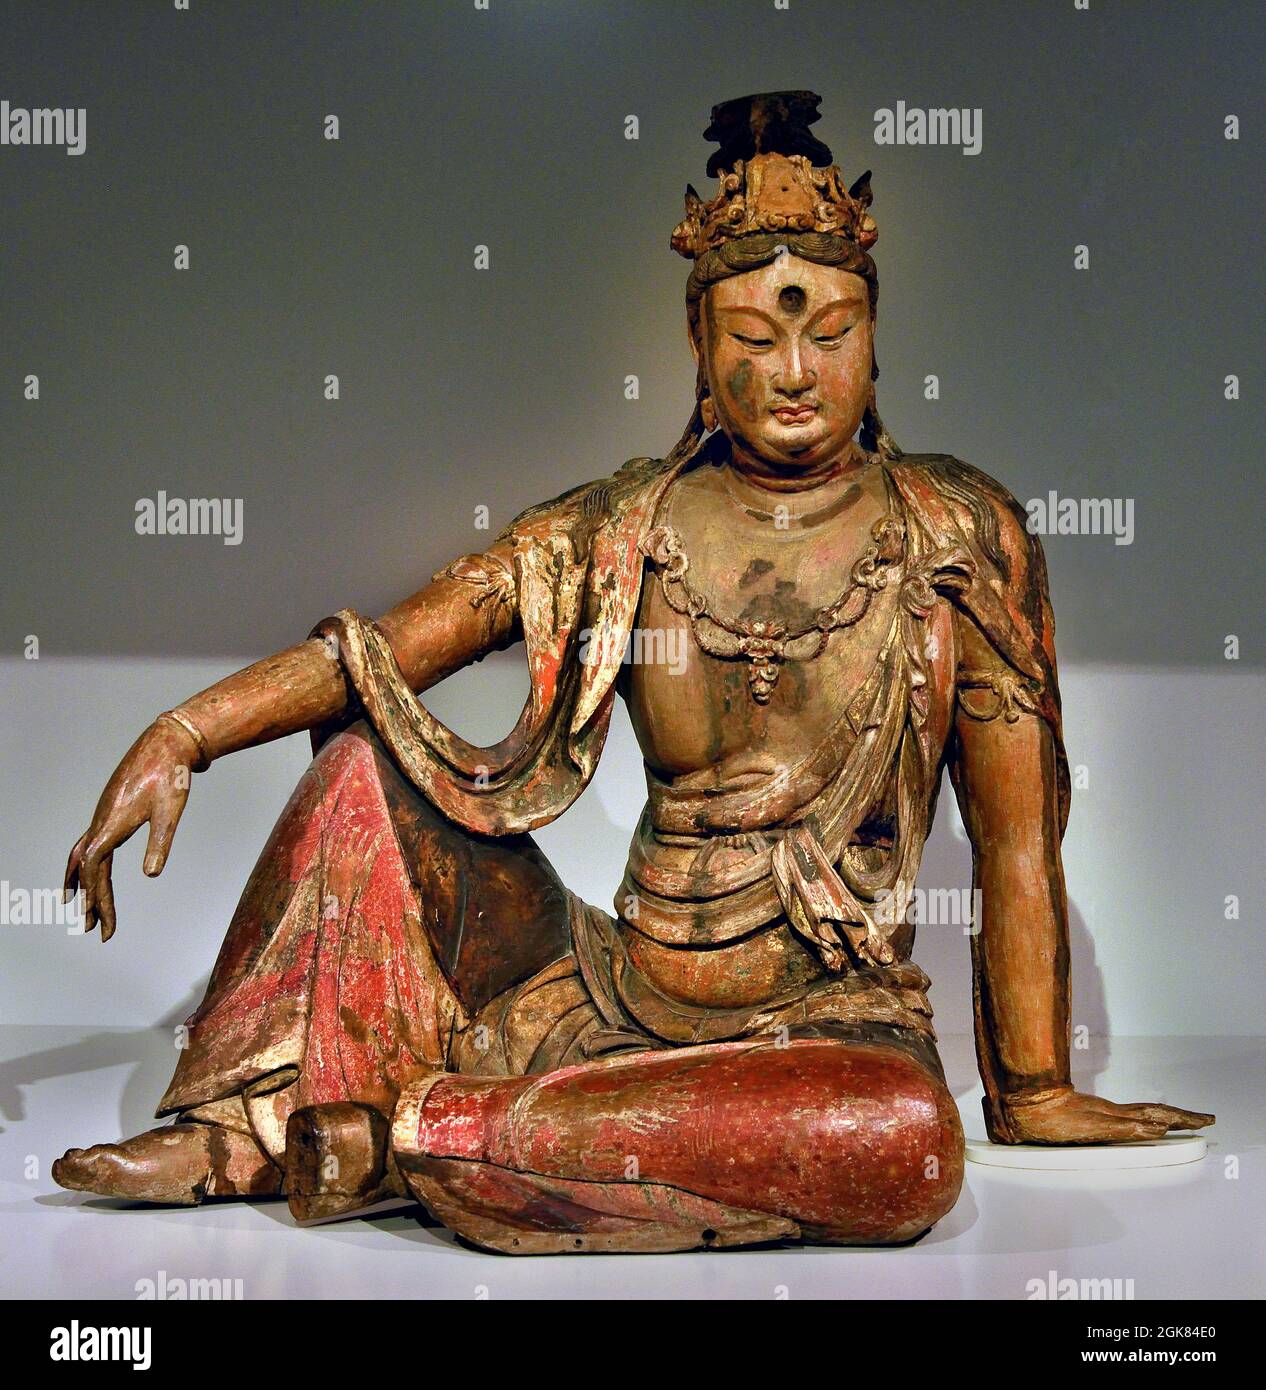 Shanxi. 1100 - 1200 dynastie des Liao (907-1125) / dynastie des Jin (1115-1234) Asie, Chine, (divinité bouddhiste Guanyin, sauveur de personnes en danger, dépeint méditant sur un rocher. Réflexion de la lune dans l'eau, symbole de l'illusion et de la transience dans le bouddhisme.) Banque D'Images